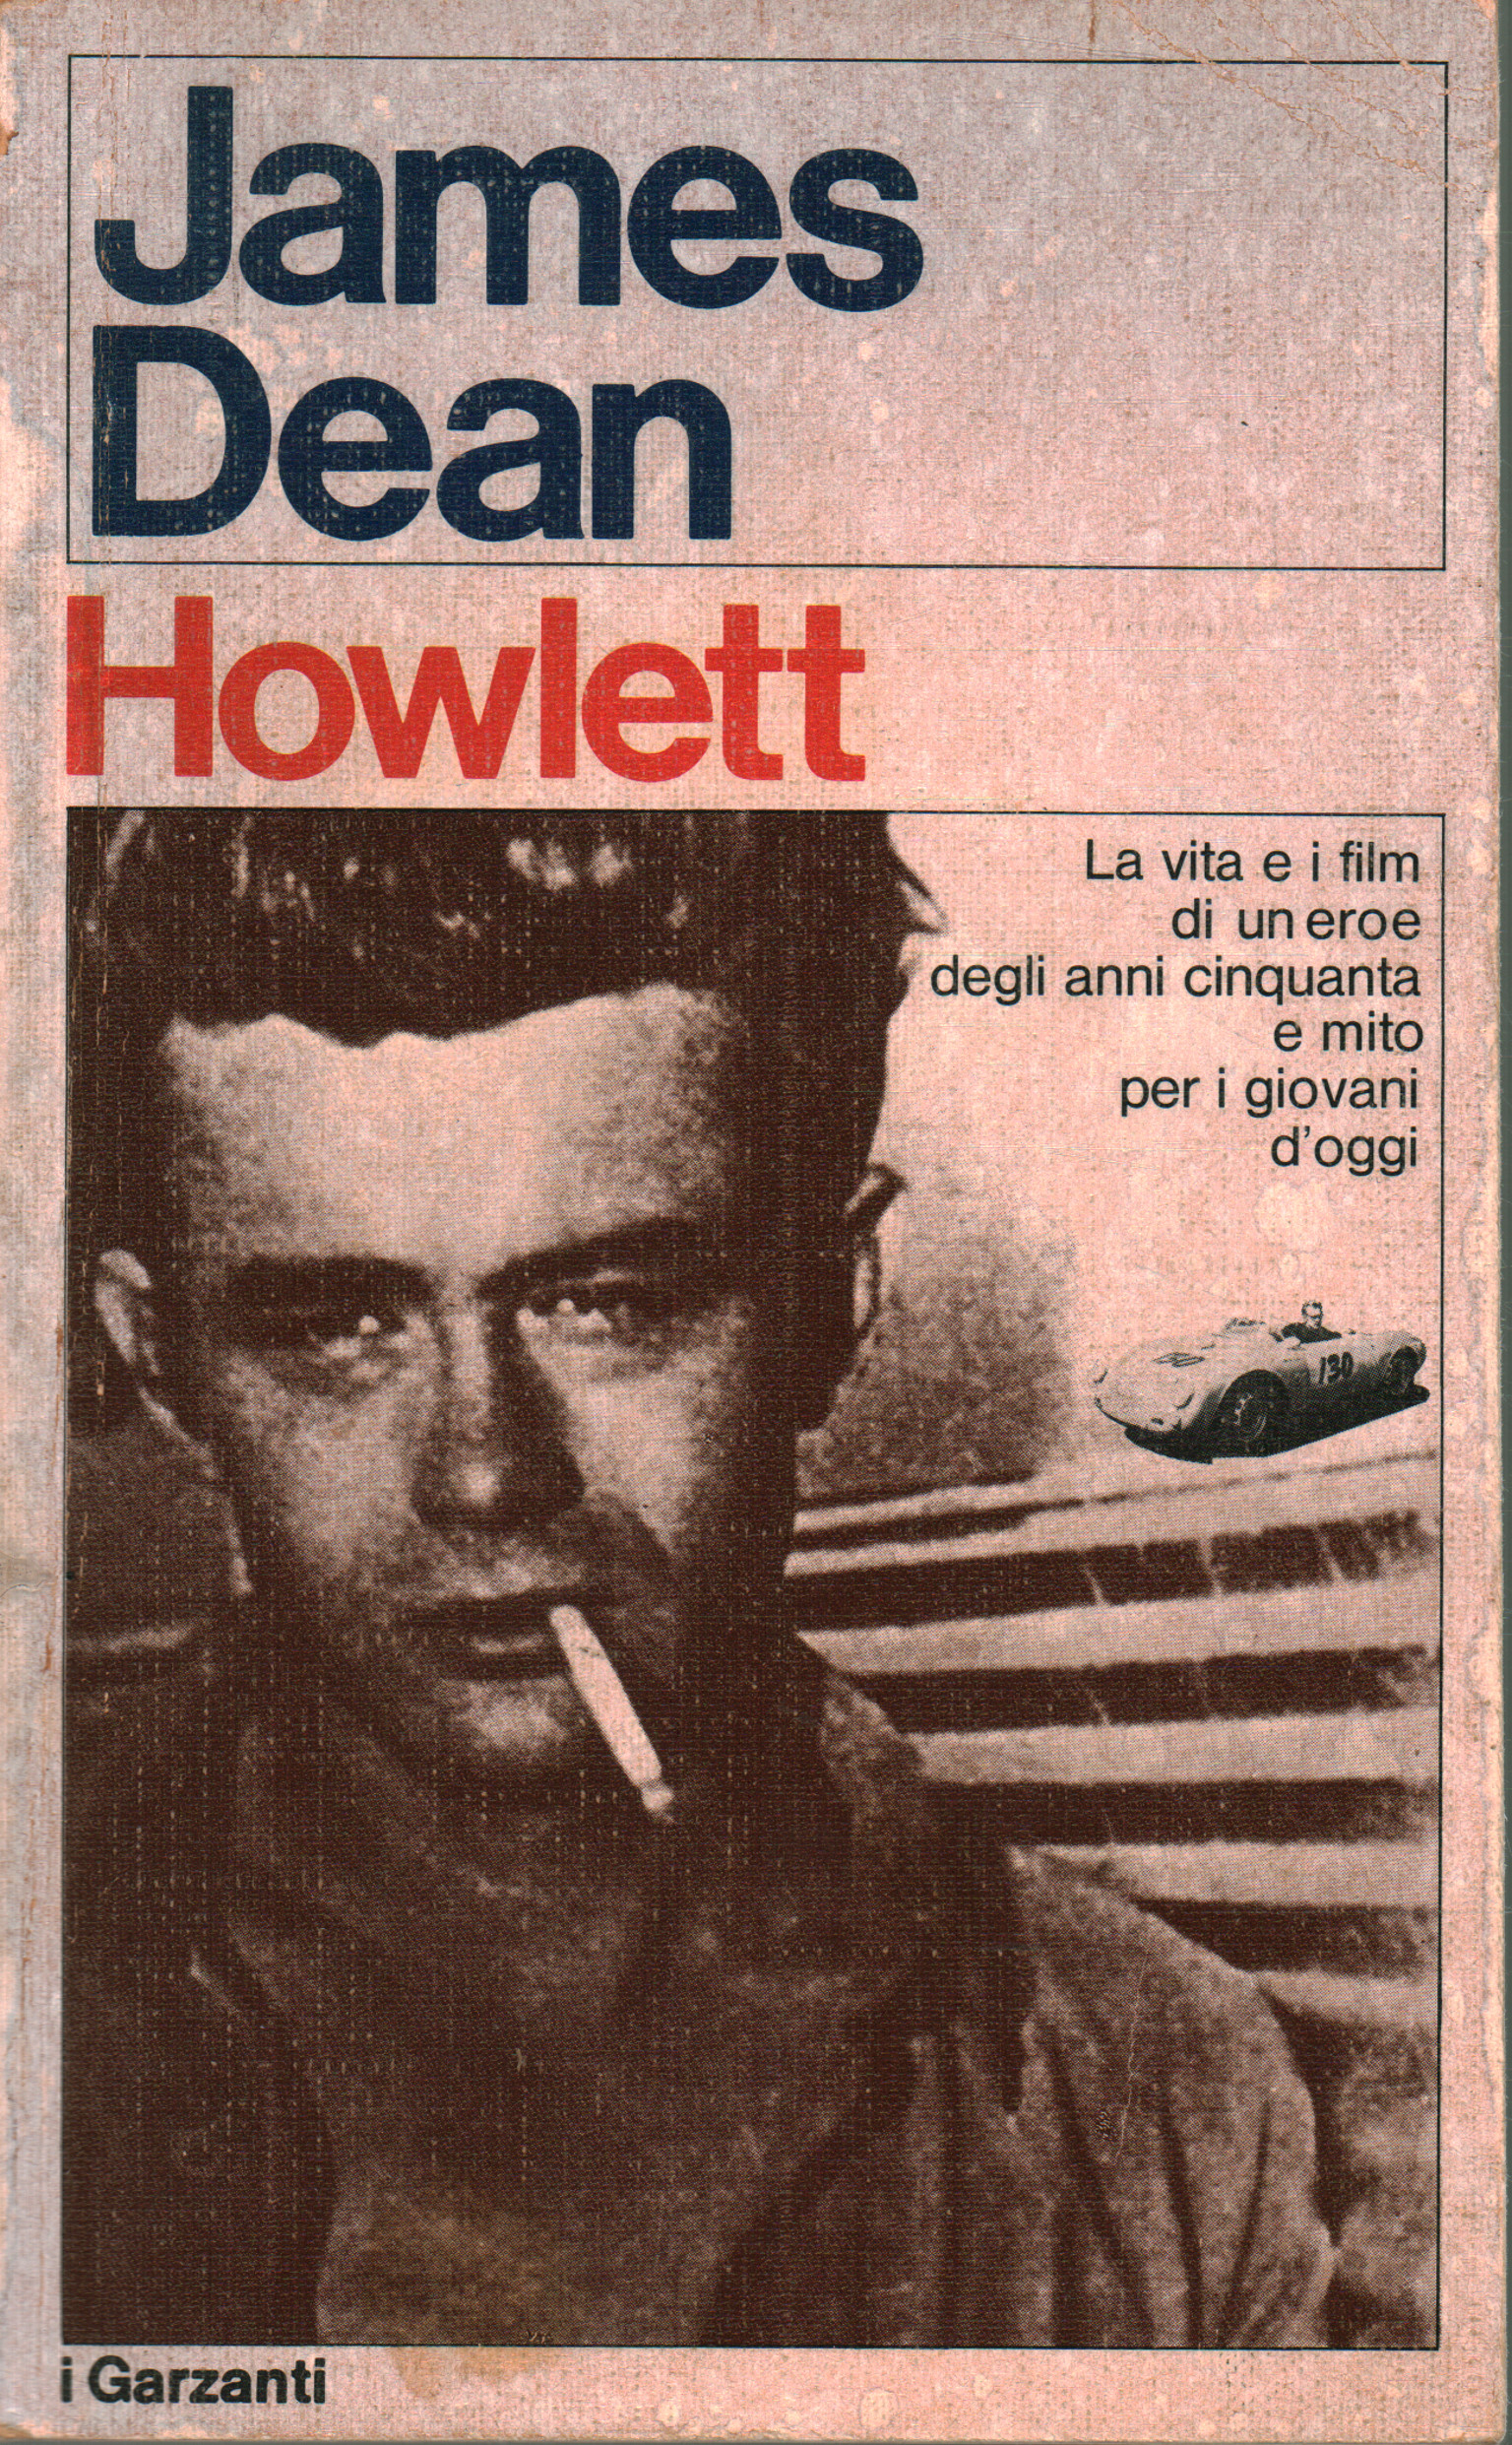 James Dean, John Howlett